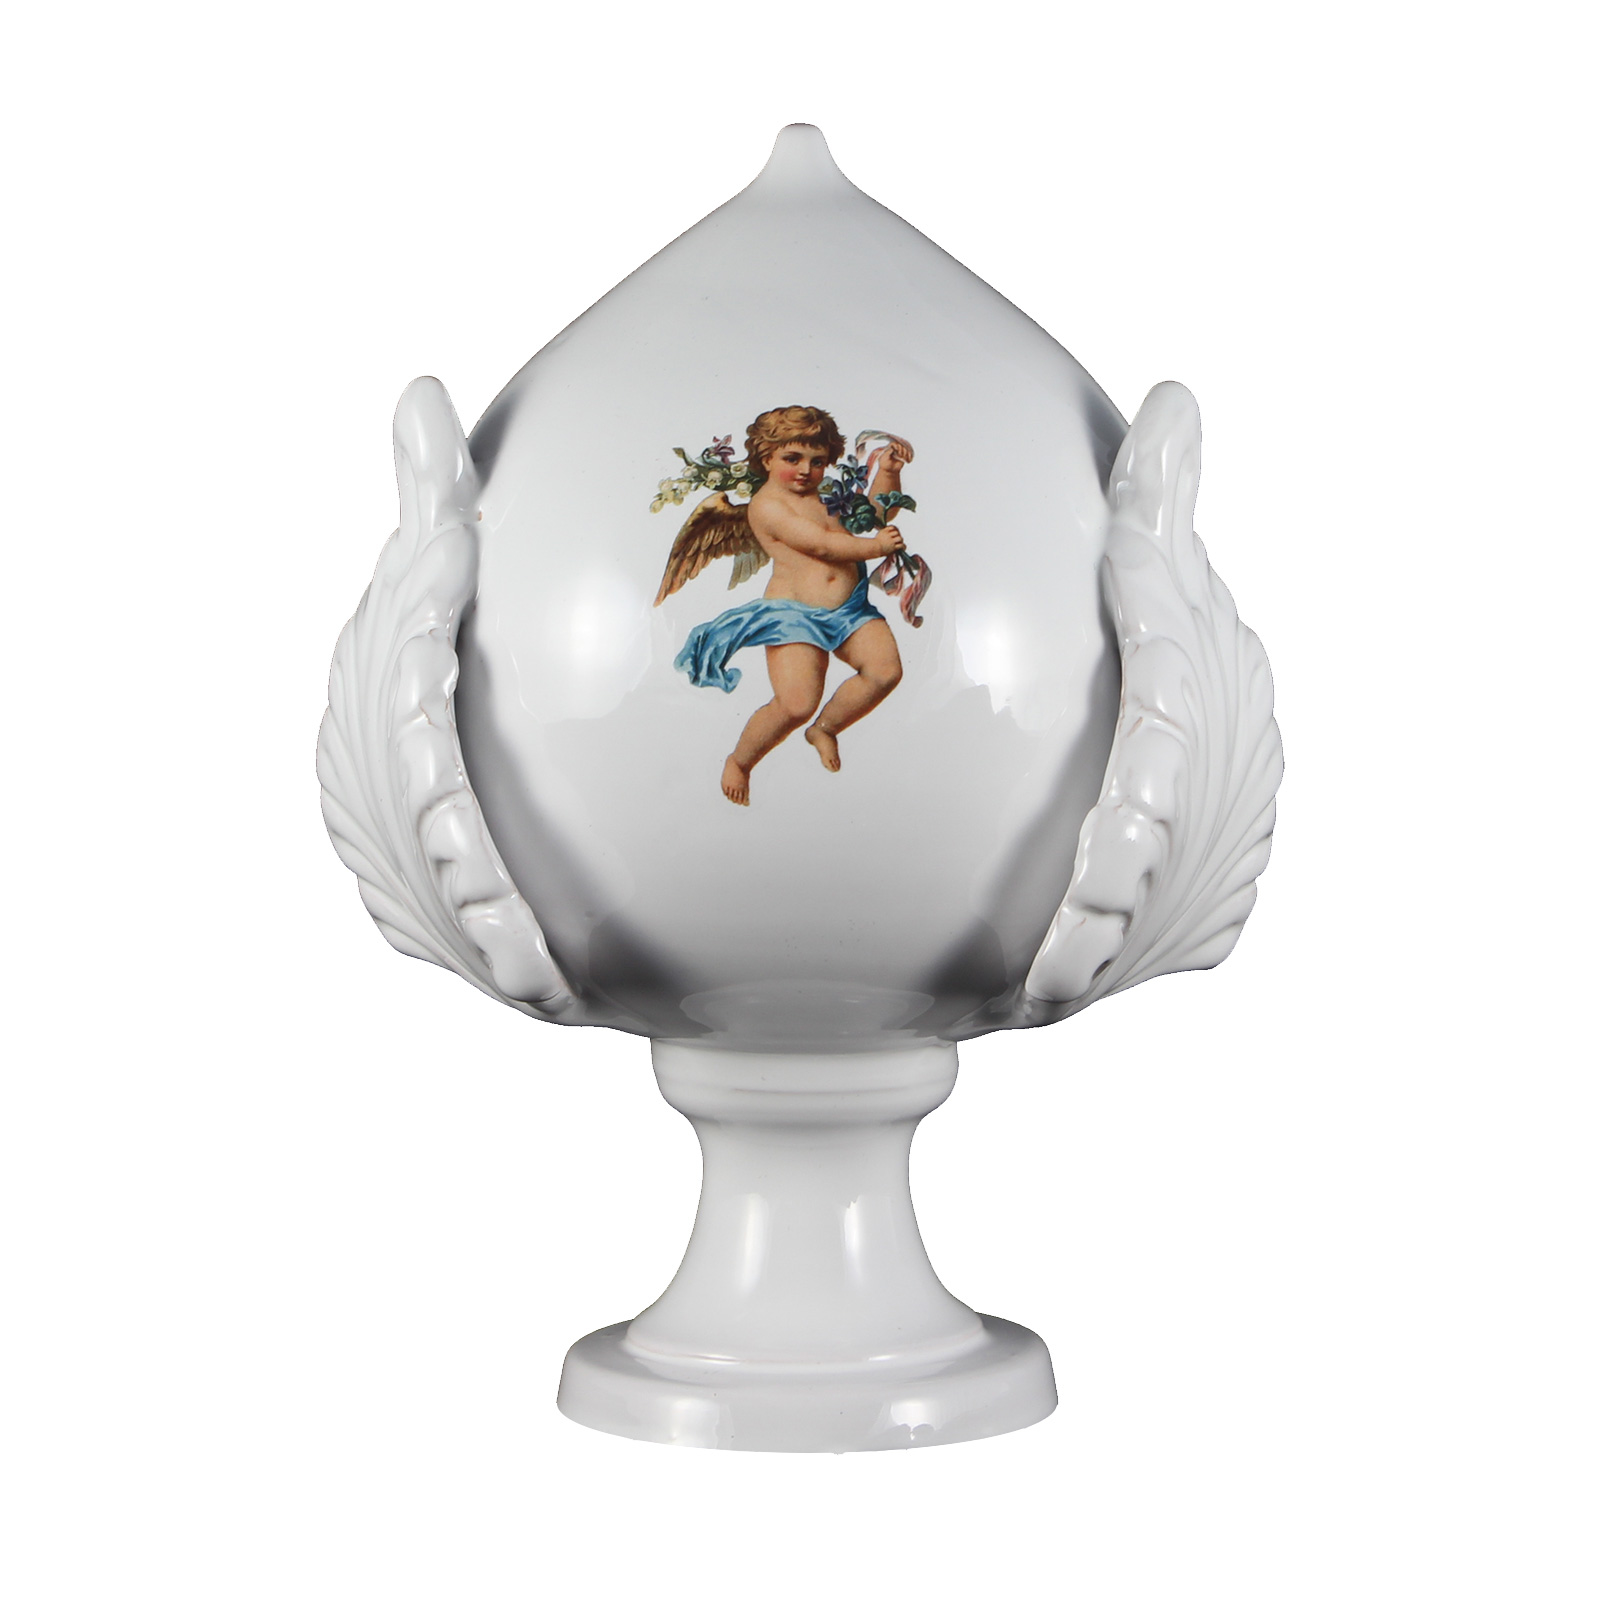 Изображение Pomo pugliese (pumo) in ceramica decorata - Decorato con angeli - Altezza 18 cm